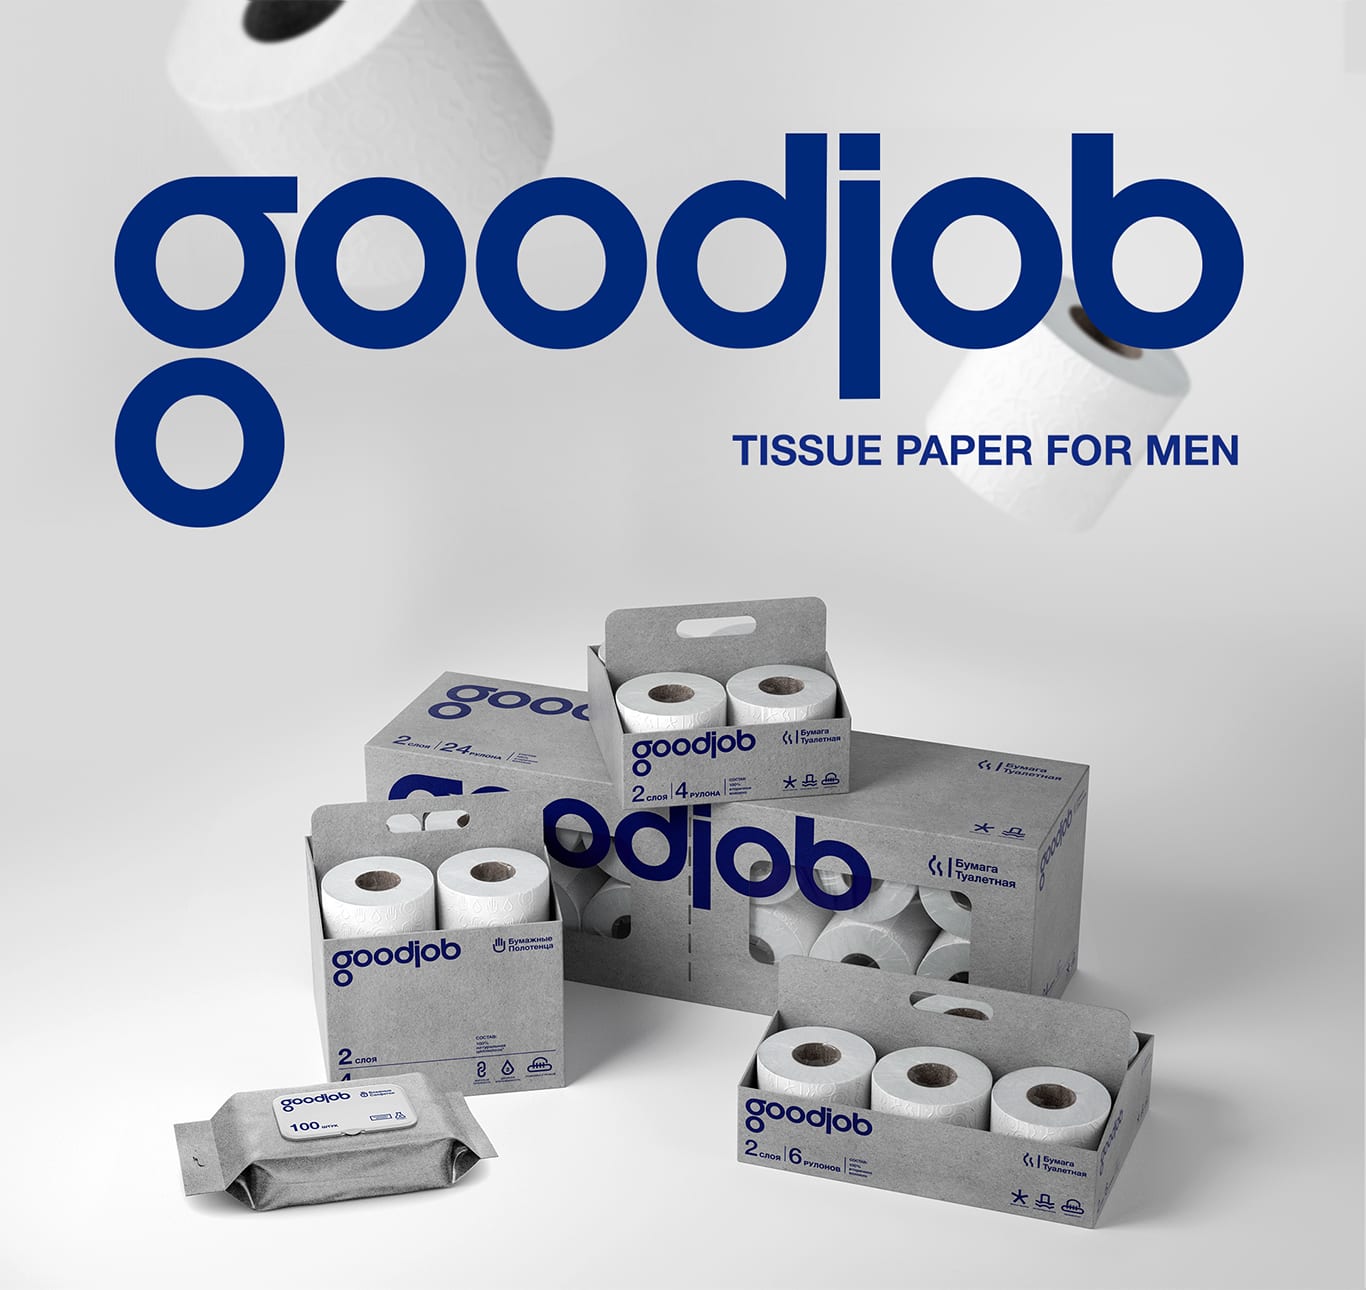 GOODJOB Tissue Paper for Men Packaging Design